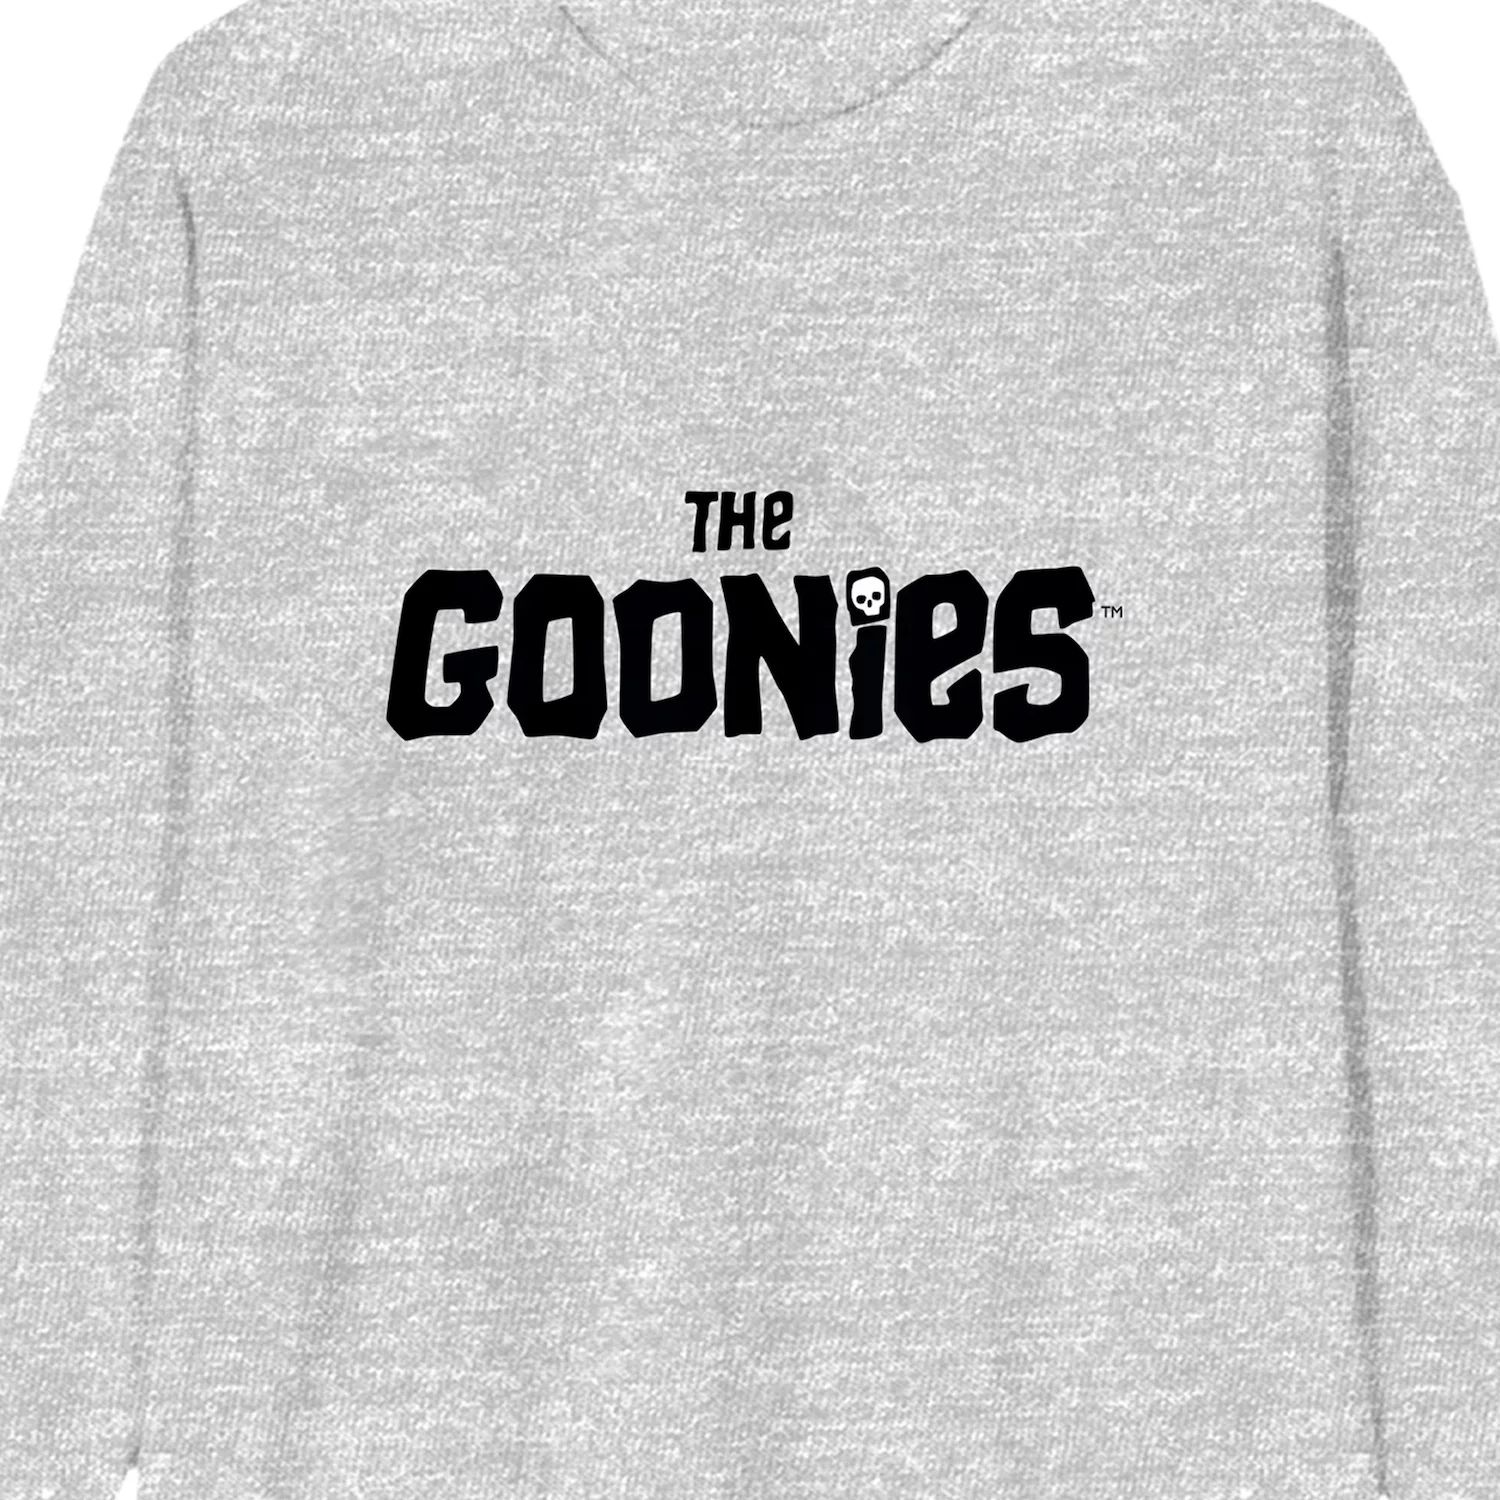 Мужская футболка с логотипом The Goonies Licensed Character цена и фото